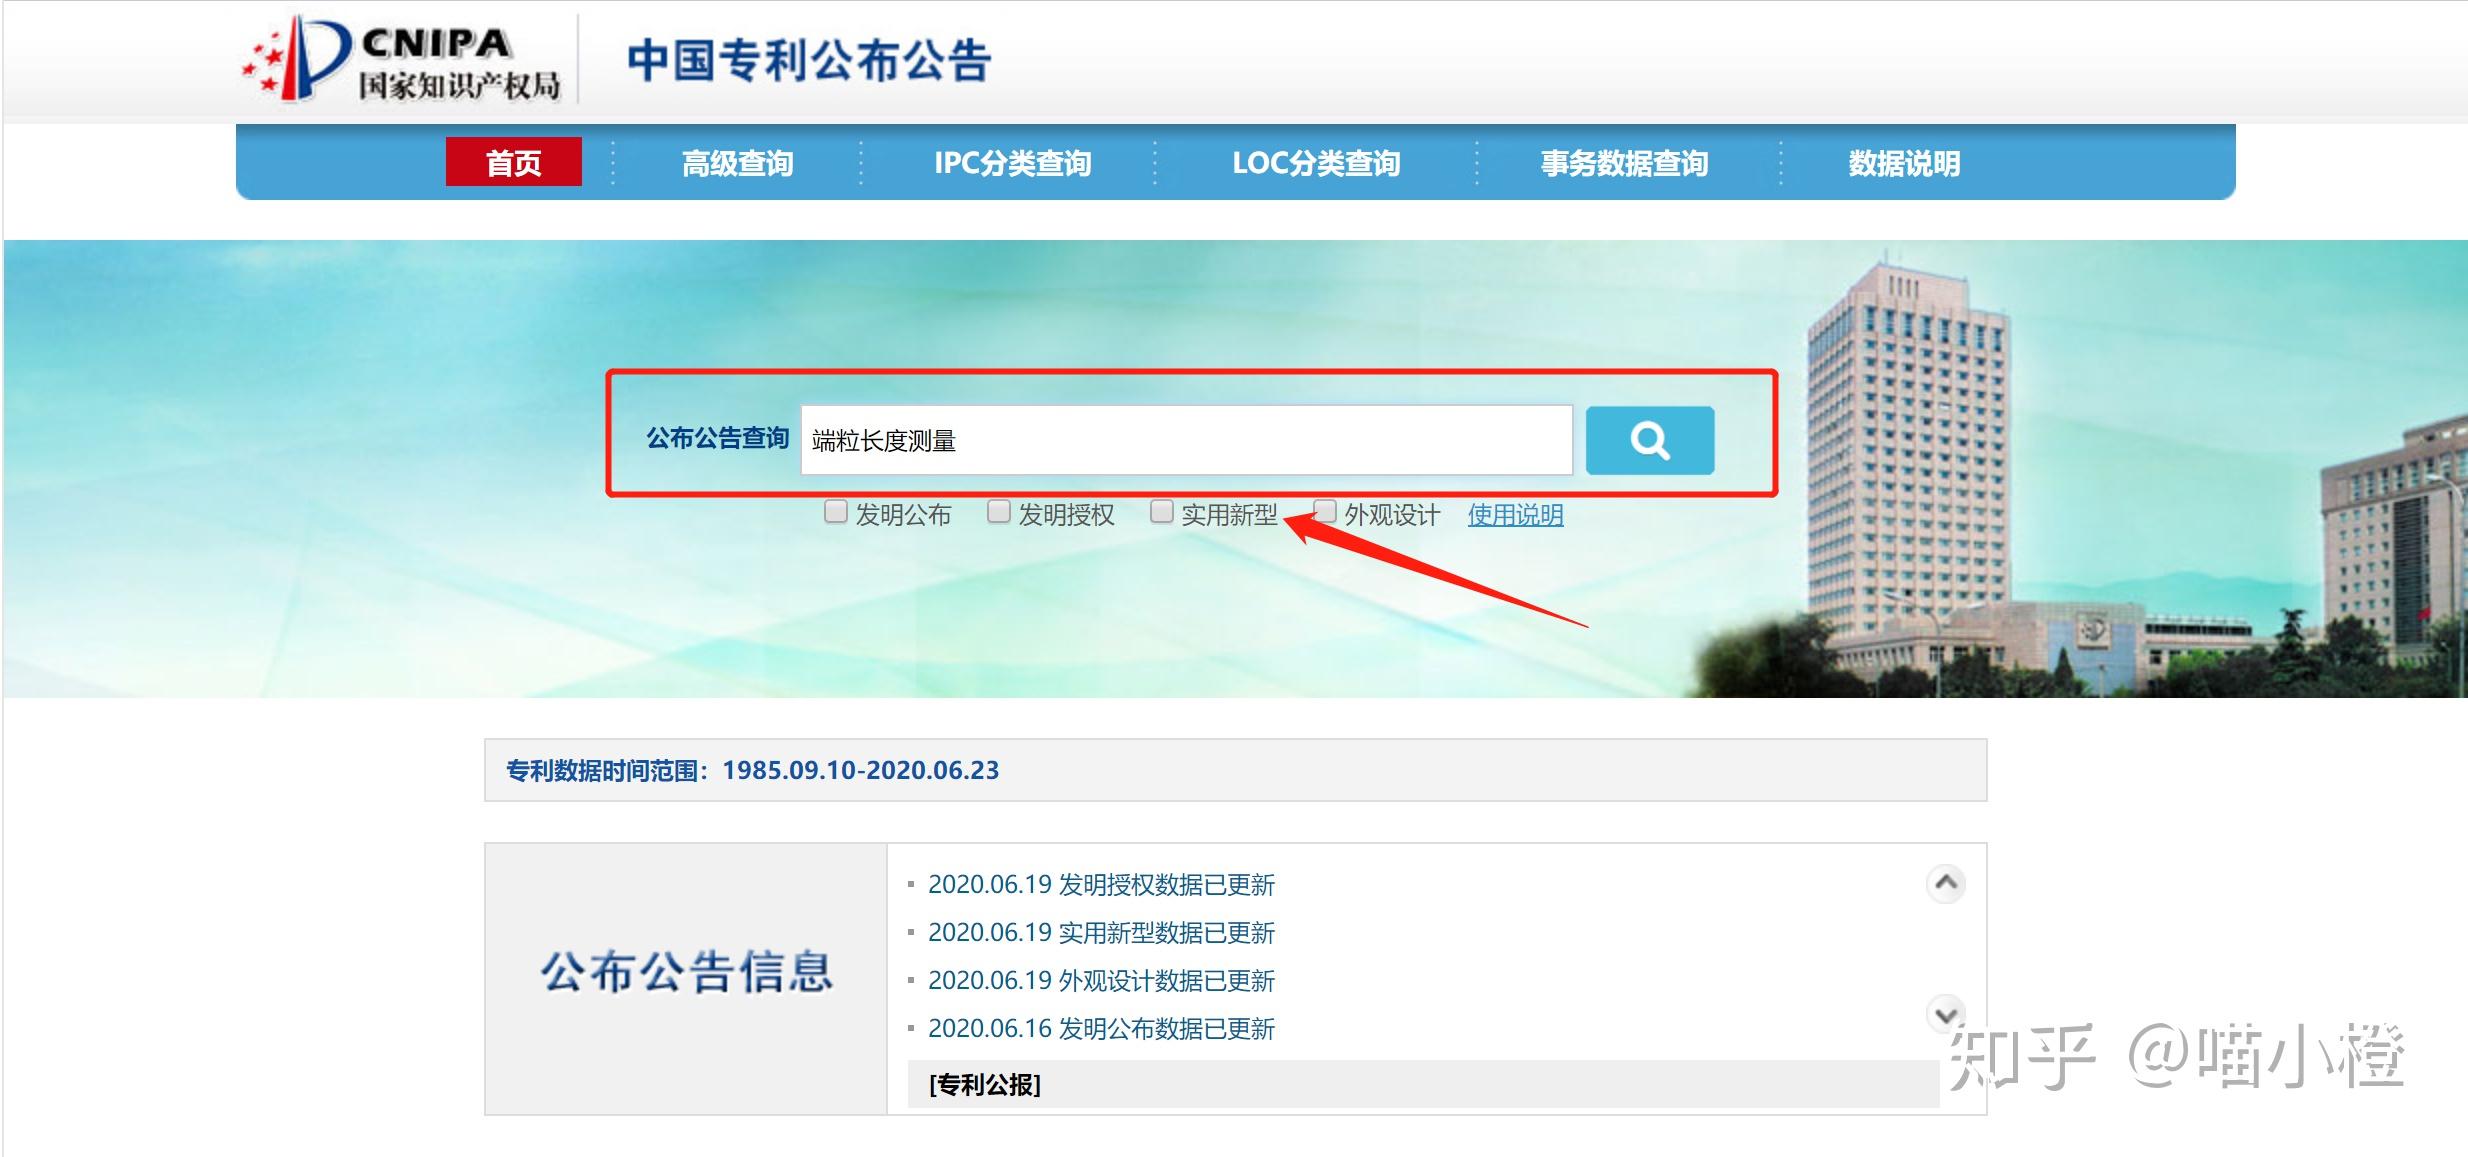 中国专利查询——国家知识产权局专利和集成电路布图设计业务办理统一身份认证平台 - Angry_Panda - 博客园